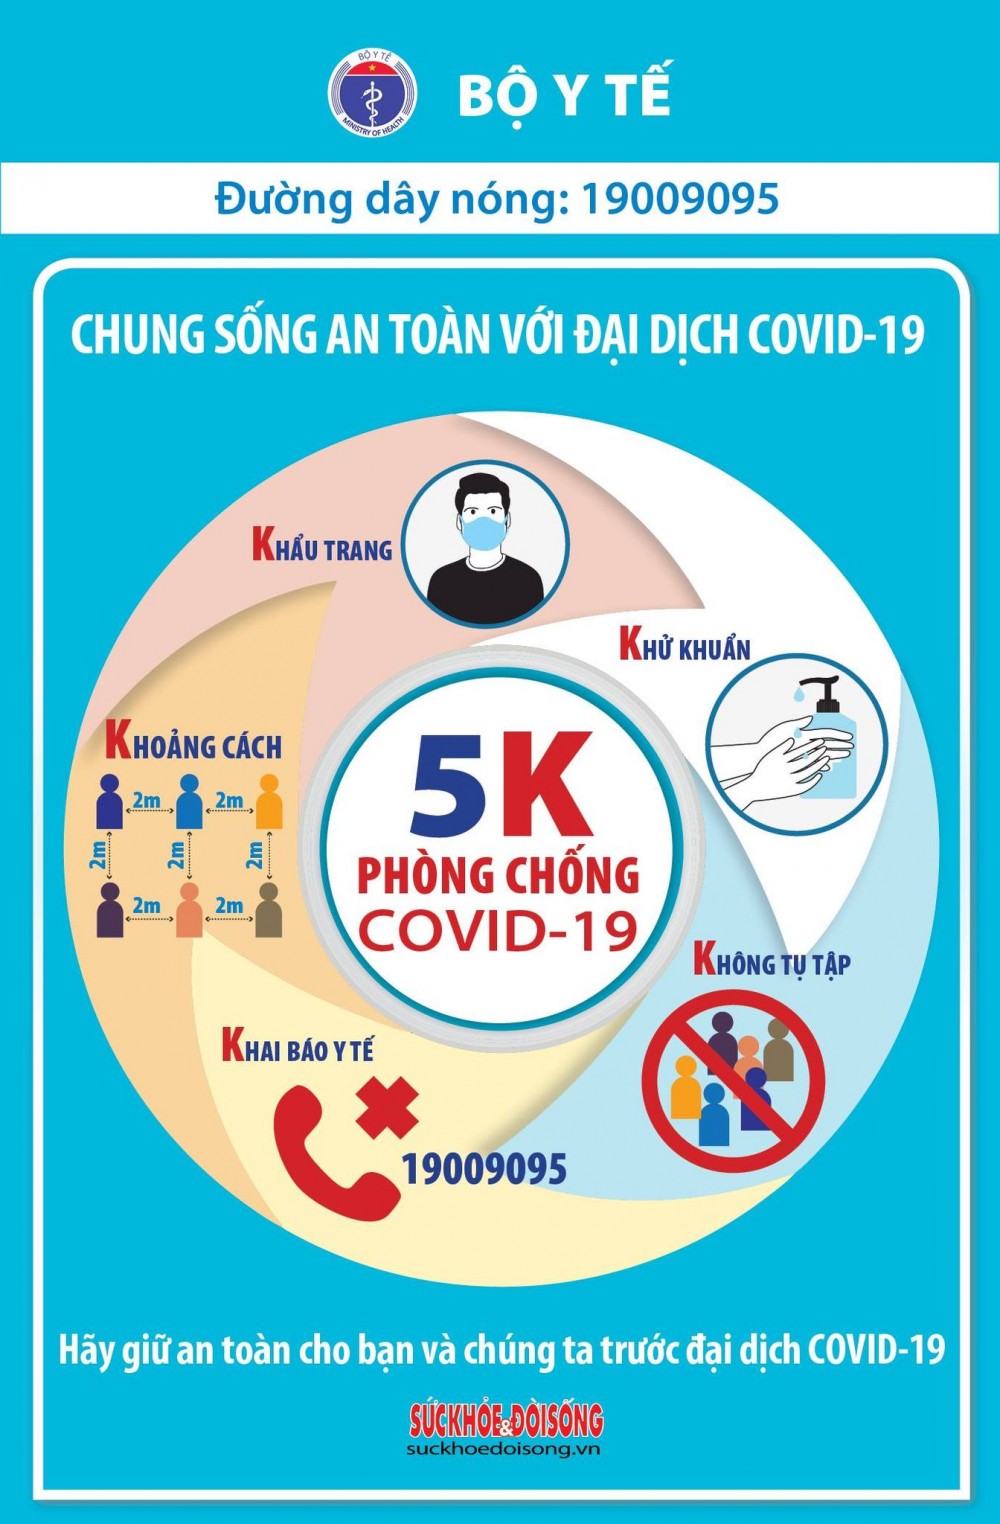 Covid-19 ở Việt Nam sáng 4/5: 2 ca mắc mới trong nước tại Đà Nẵng và Hà Nội